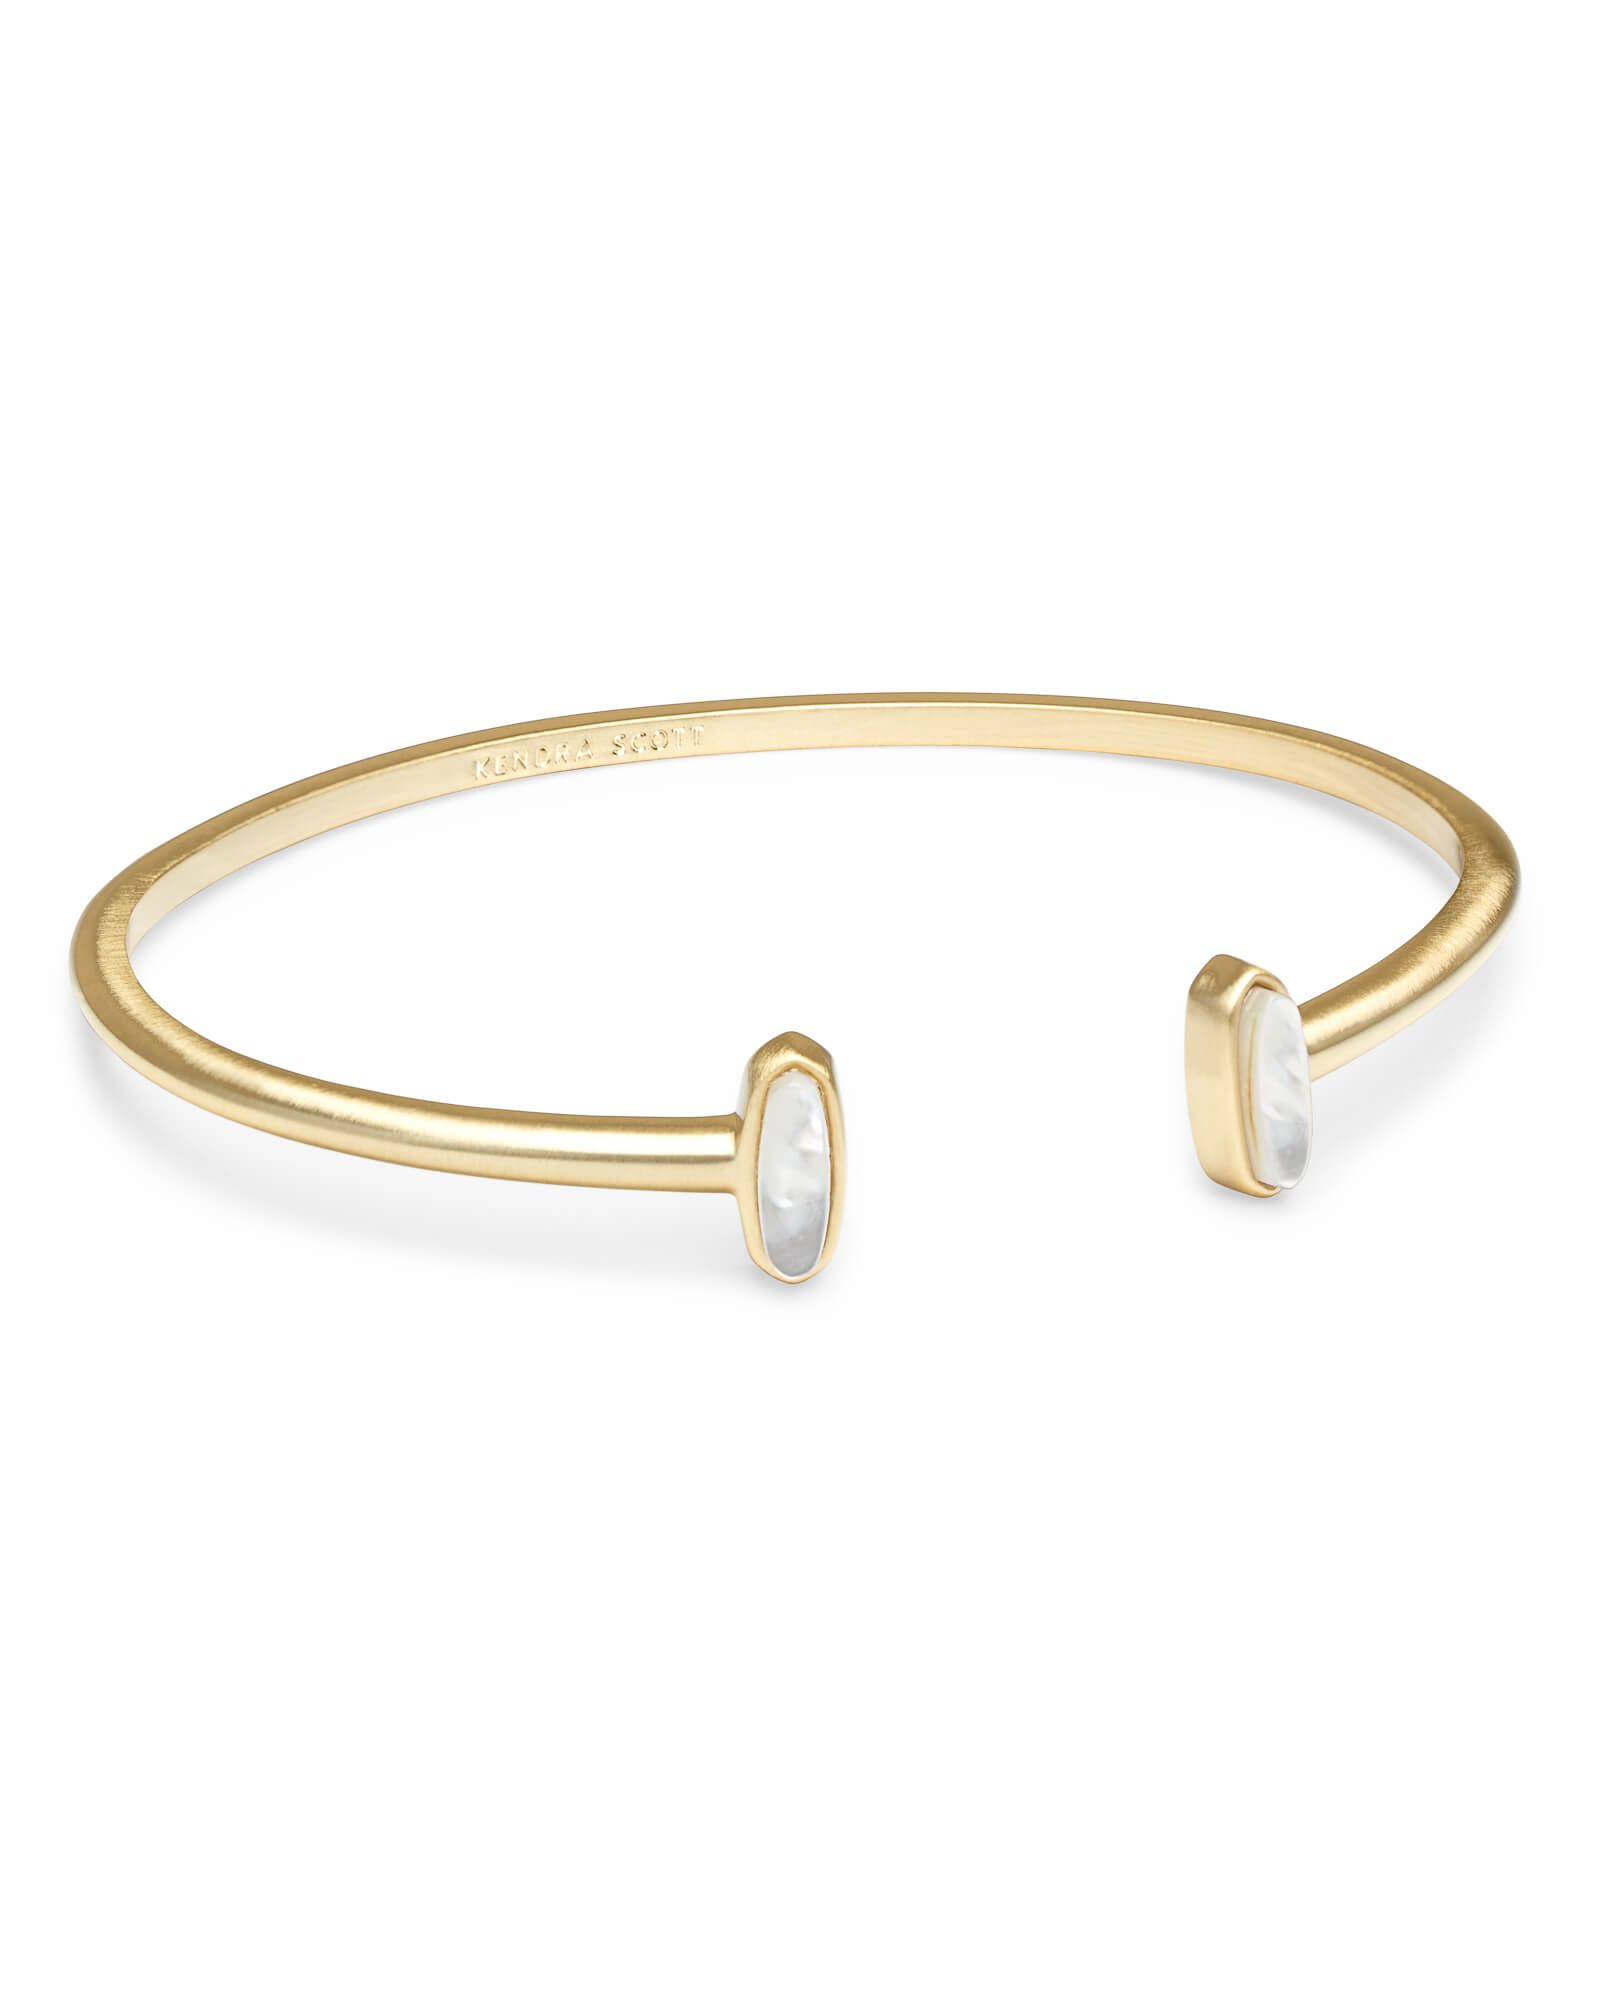 Mavis Gold Cuff Bracelet in Ivory Pearl | Kendra Scott